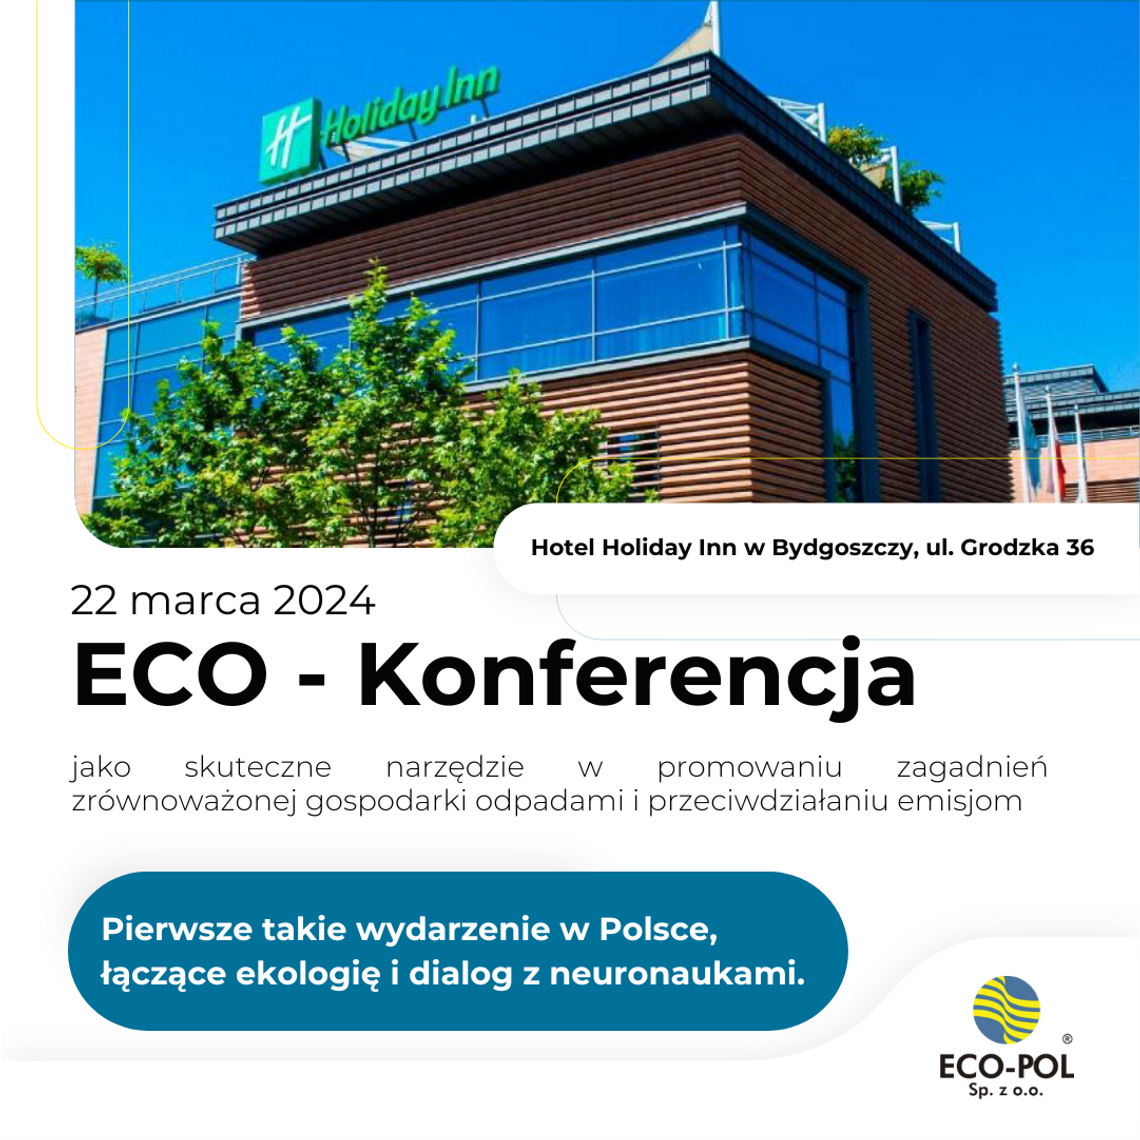 ECO-Konferencja – pierwsze wydarzenie w Polsce łączące ekologię, dialog i neuronauki  z innowacją cyfrową dla branży gospodarowania odpadami